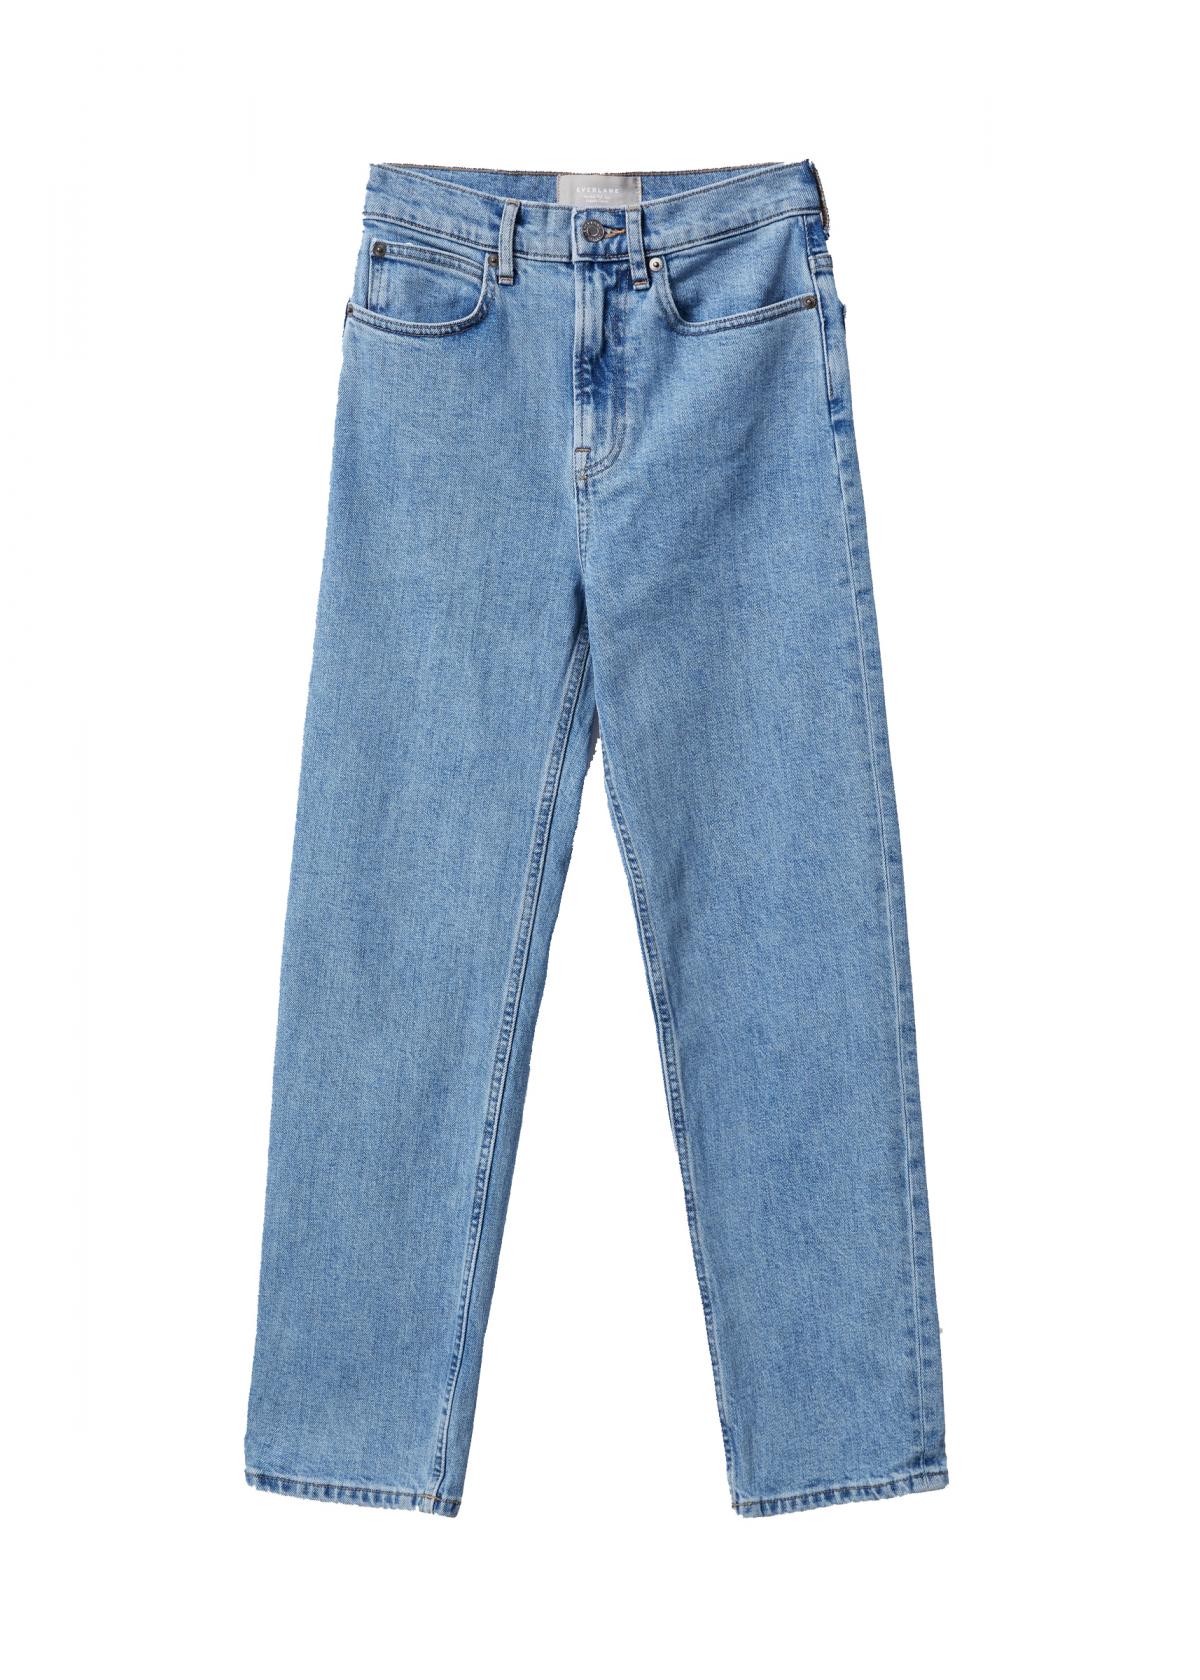 9. Non-trendy jeans